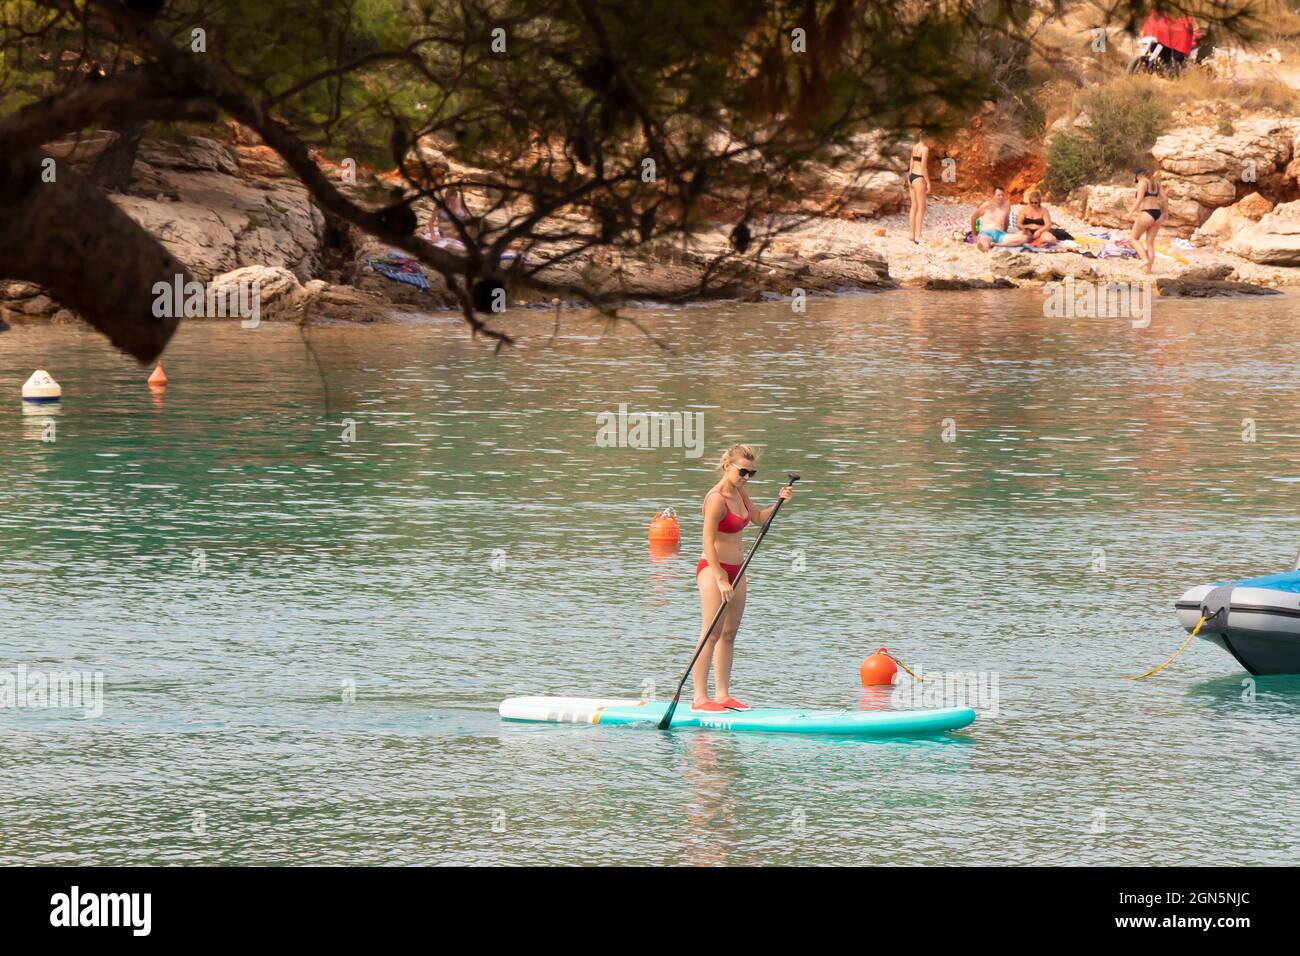 Kosirina, Murter, Croacia - 24 de agosto de 2021: Mujer joven en traje de baño rojo remando a bordo, en la playa, a través de pinos Foto de stock